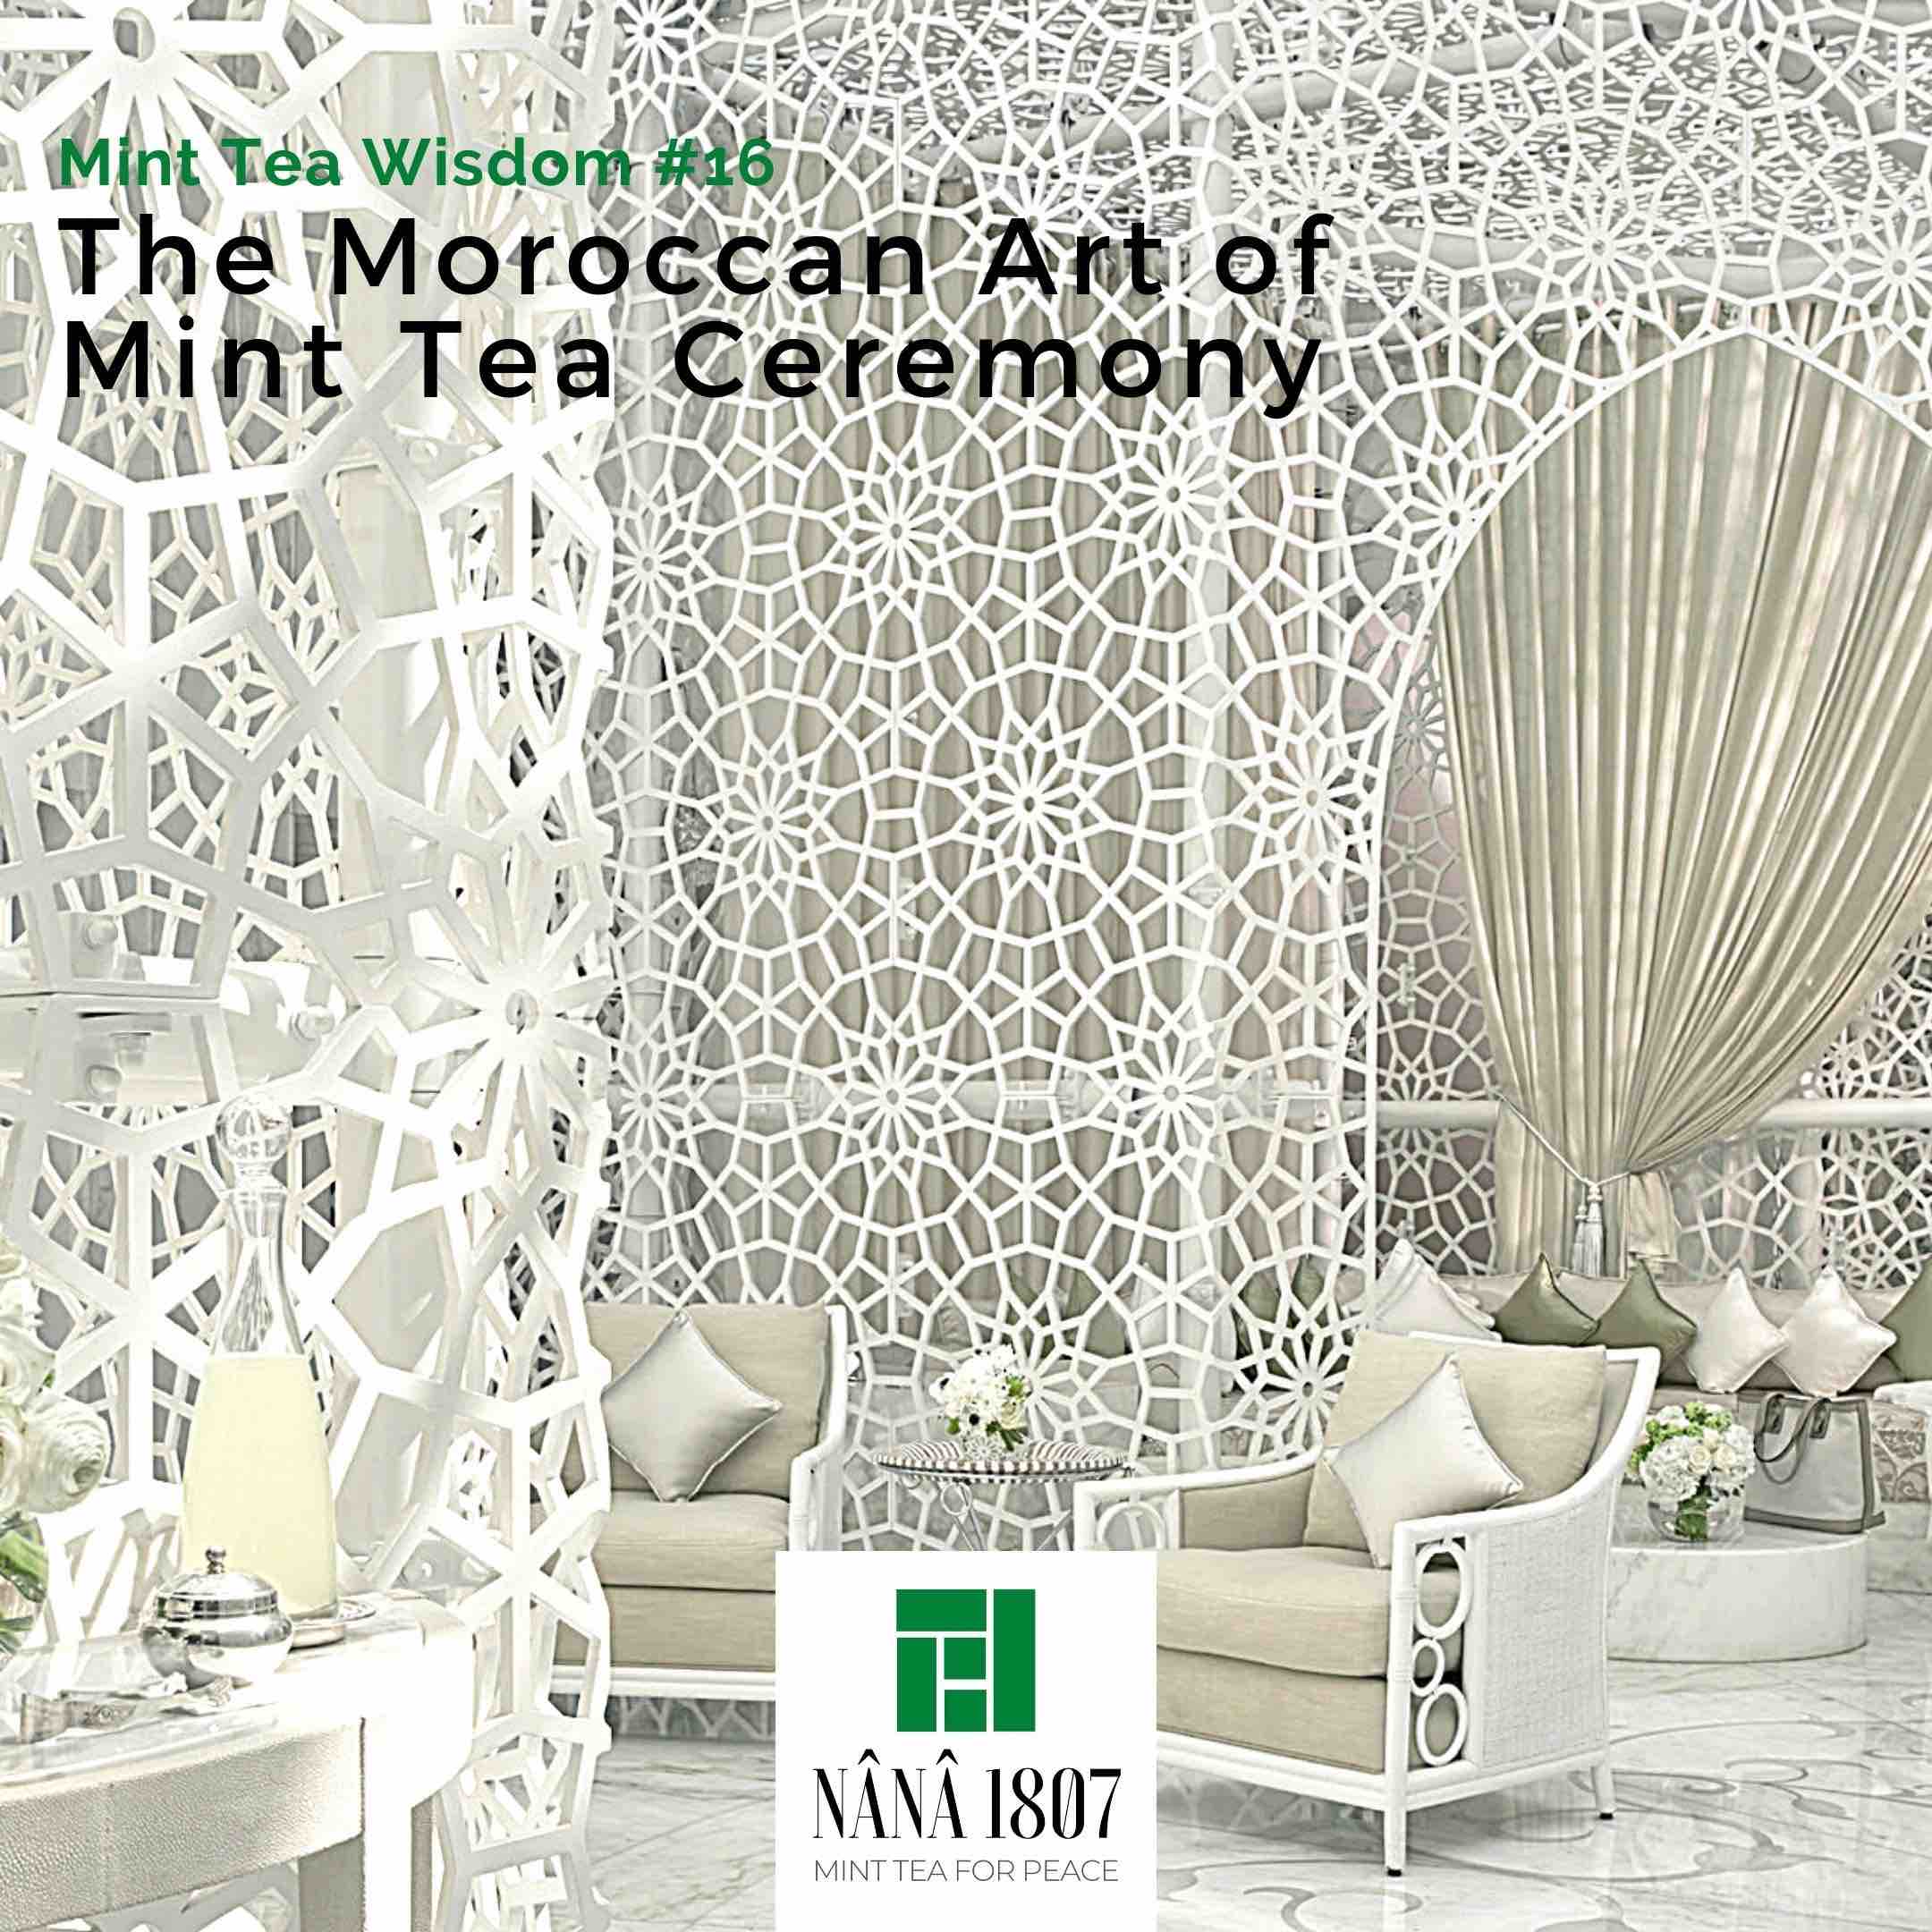 Maida - Servir le thé est un art et ces verres à thé renvoient au design  marocain traditionnel, qui iront parfaitement avec la théière  traditionnelle, ils sont ornés de très beaux motifs